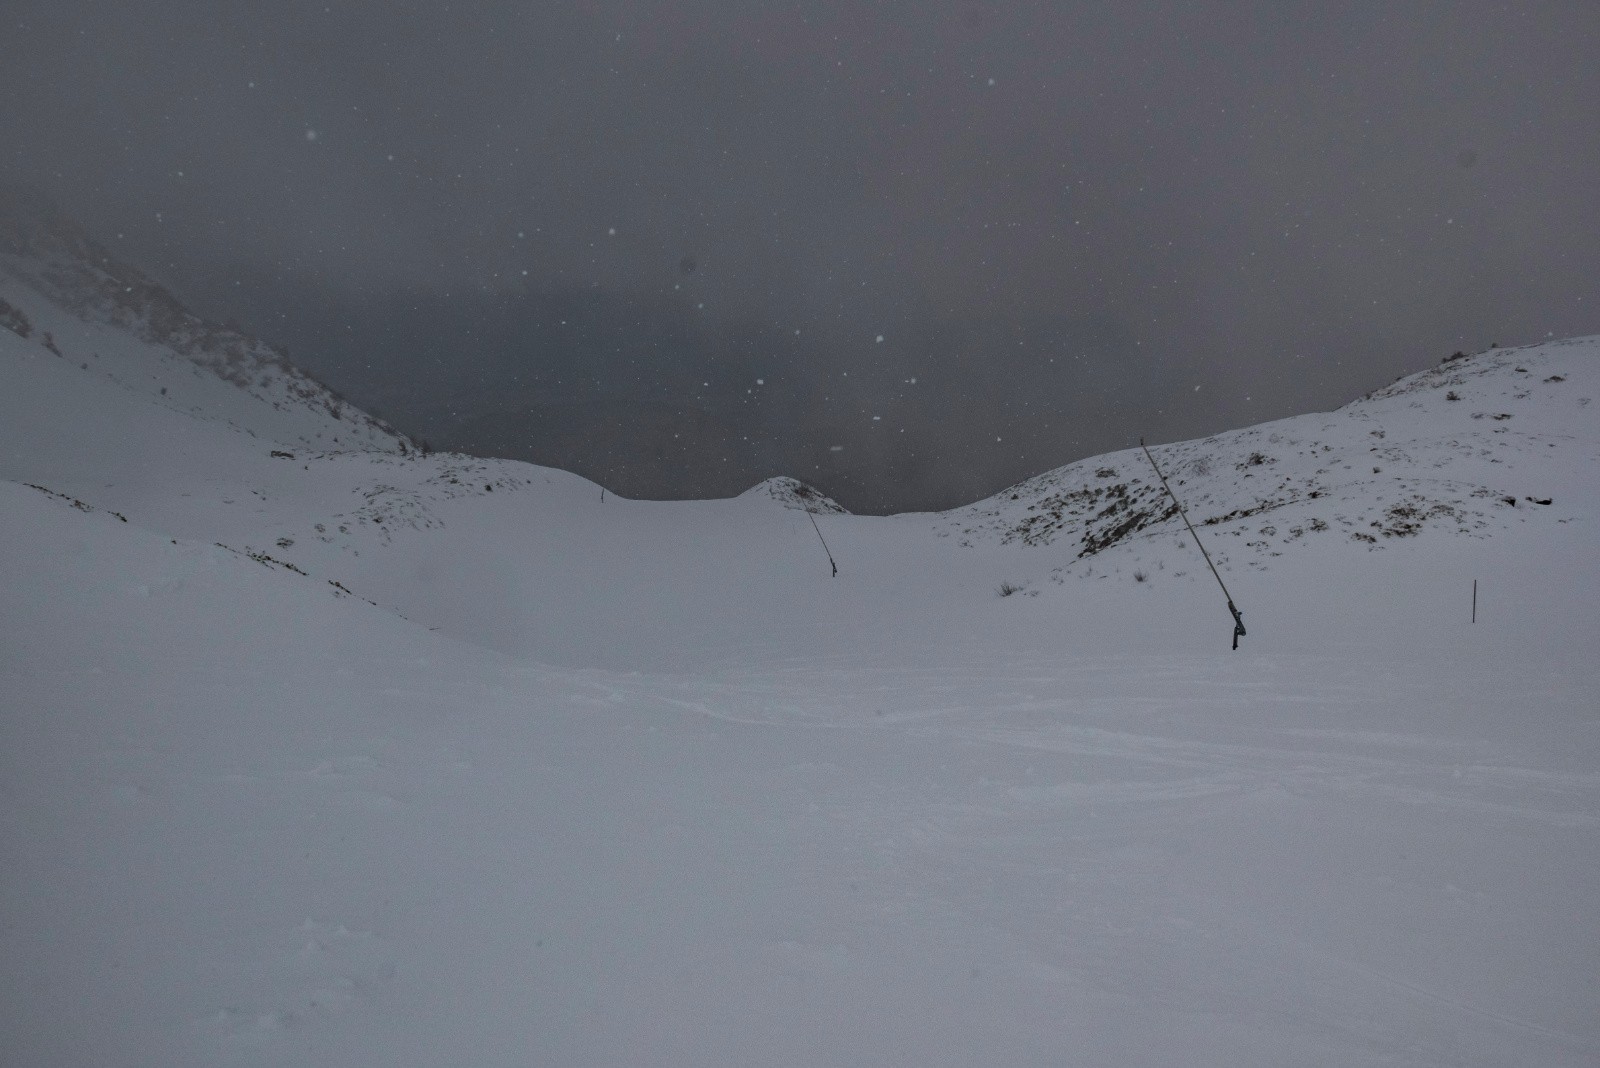 Un peu de visibilité quand même sur le bas pour faire un peu de bon ski, même si c'est pas la partie la plus sauvage... 